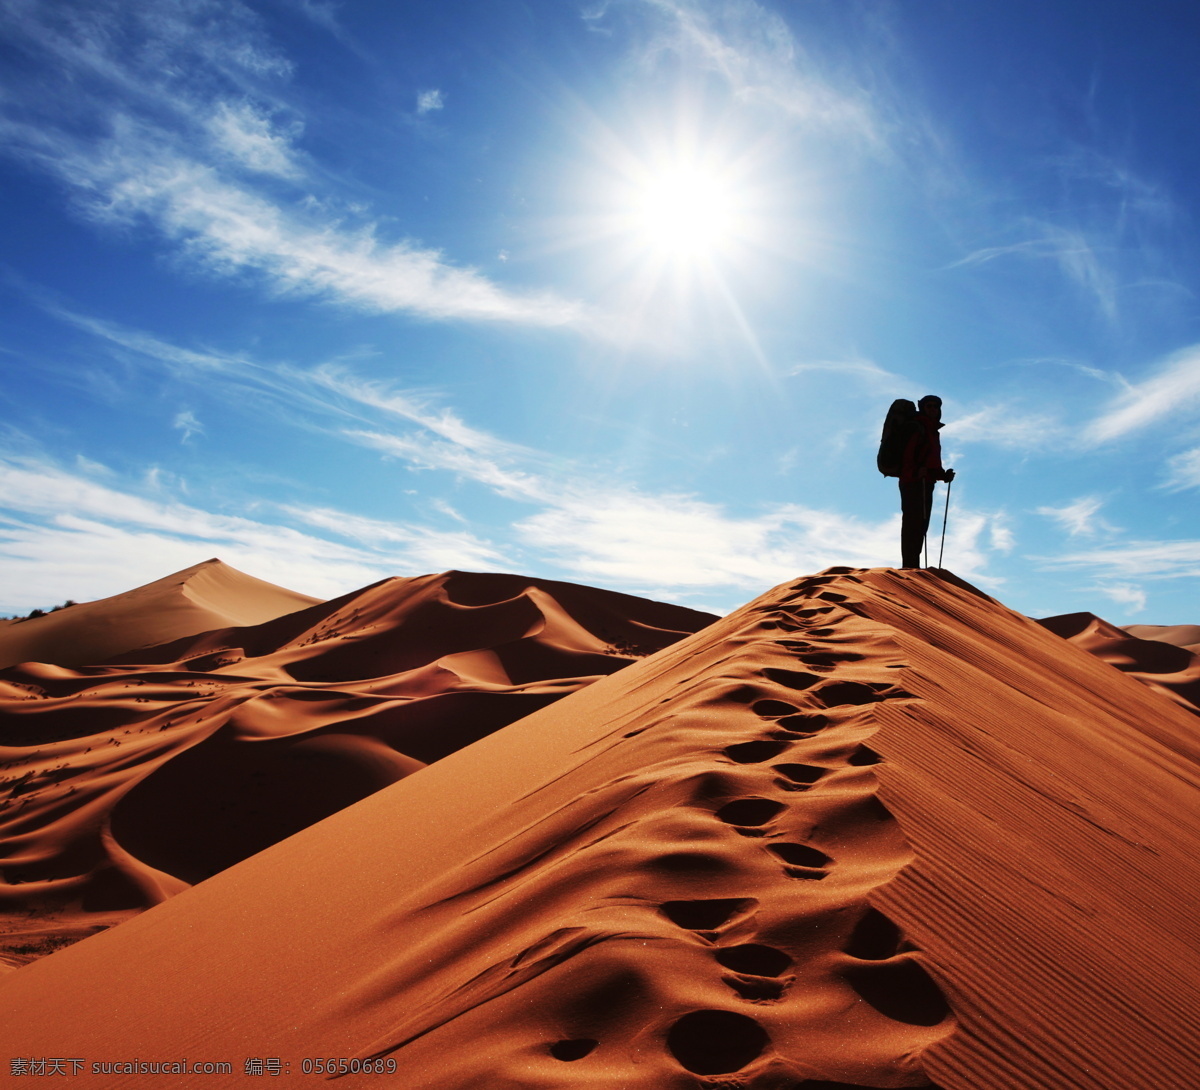 沙漠旅行 沙漠 沙漠风光 沙漠丽景 沙漠摄影 沙漠风景 旅游摄影 国内旅游